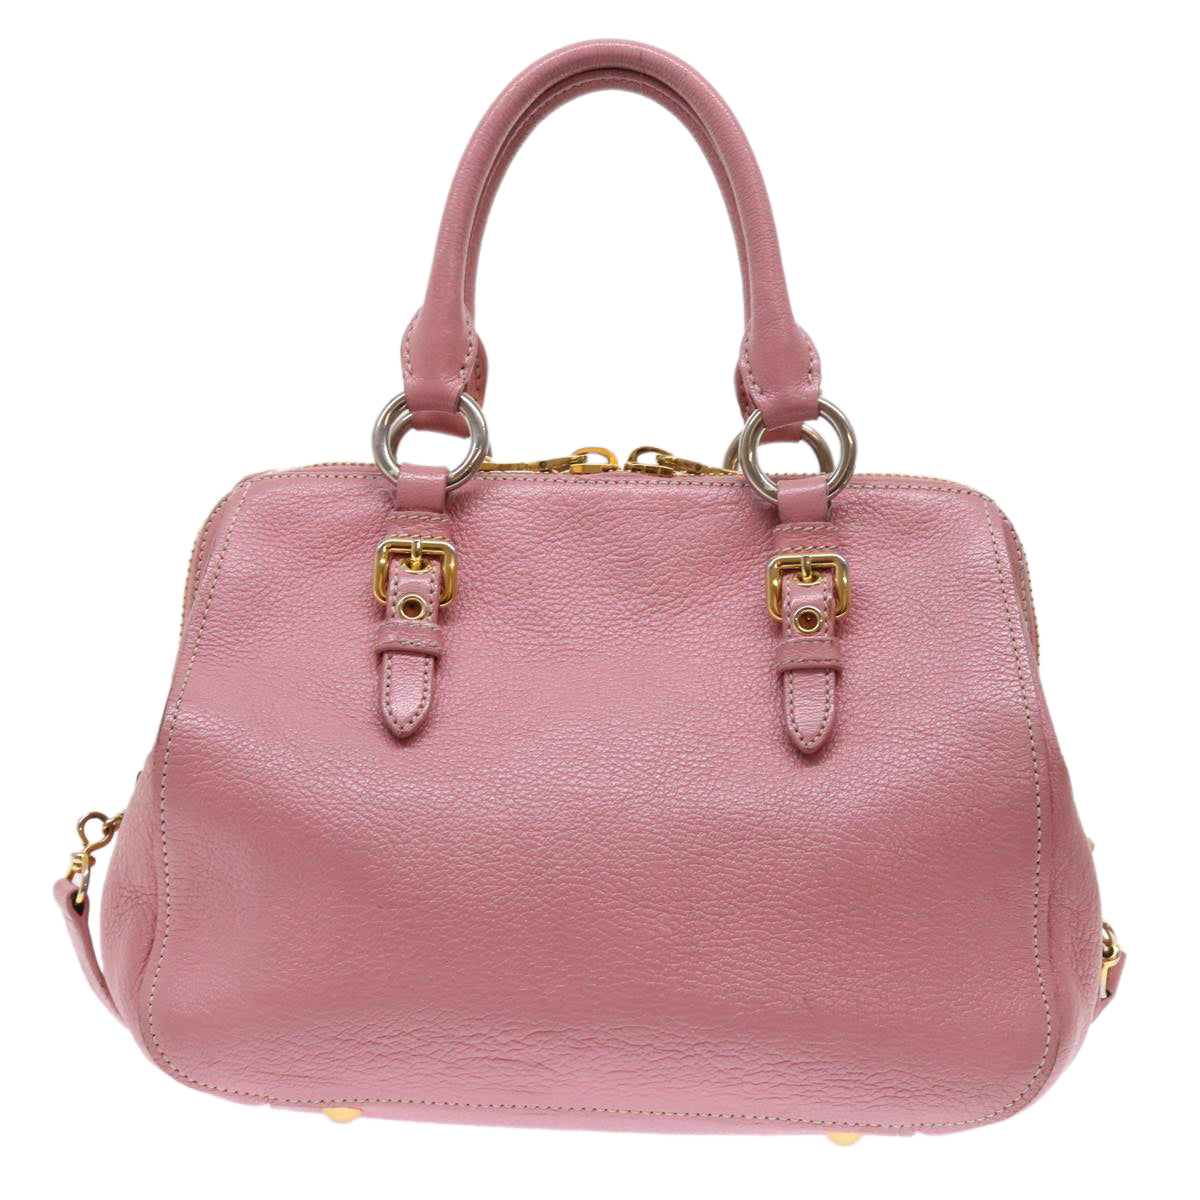 Miu Miu Hand Bag Leather 2way Pink Auth am5042 - 0